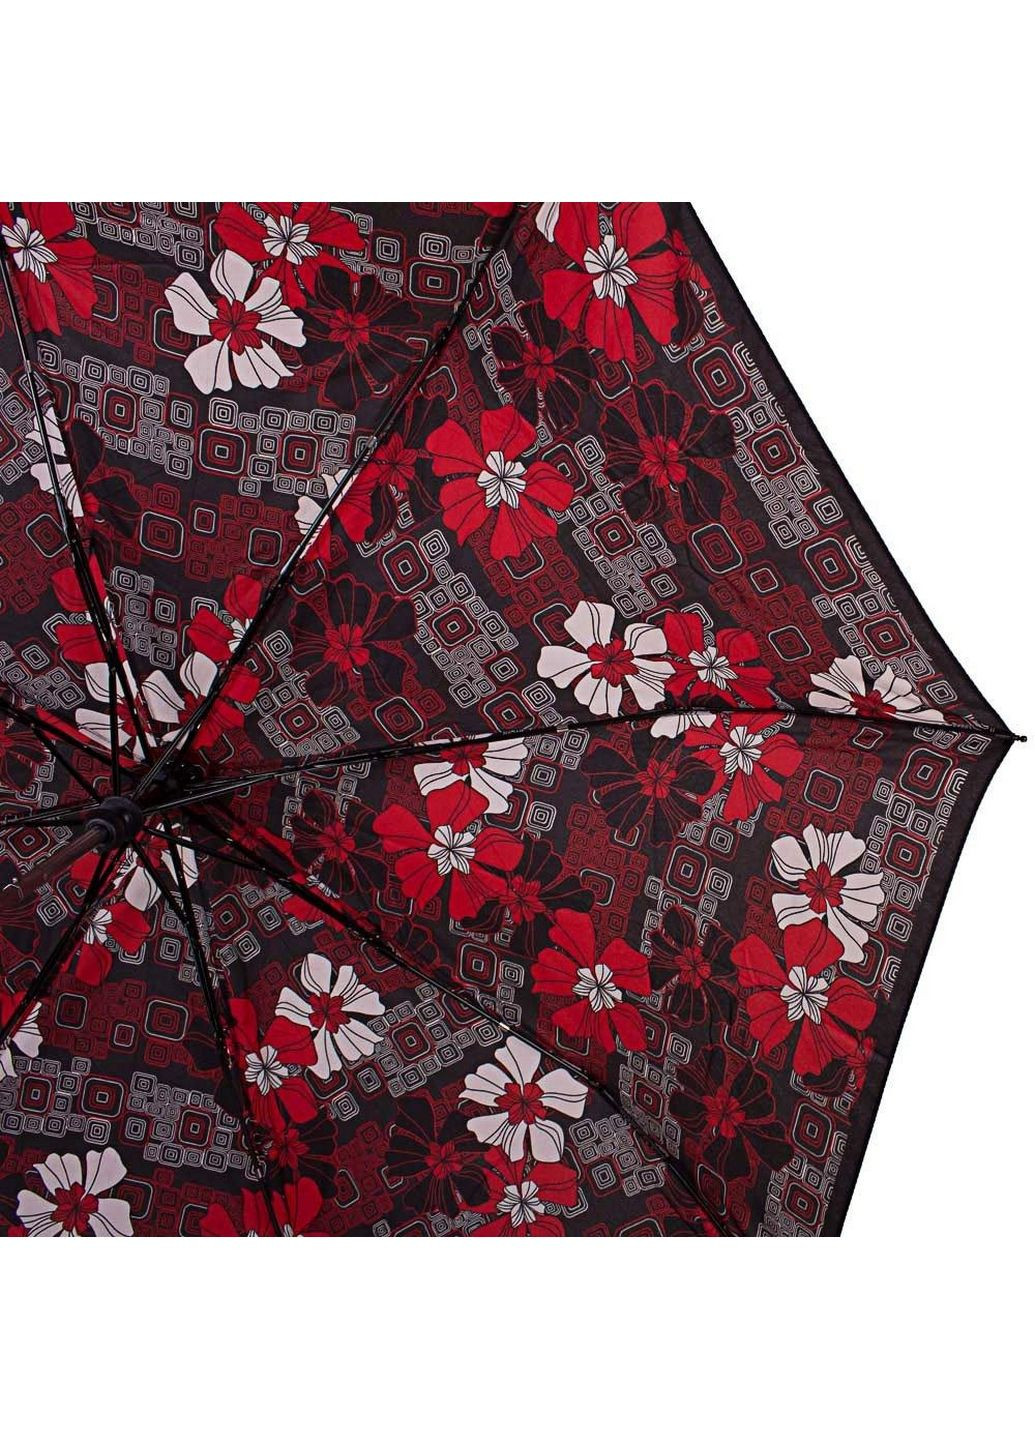 Жіноча складна парасолька напівавтомат Airton (288185553)